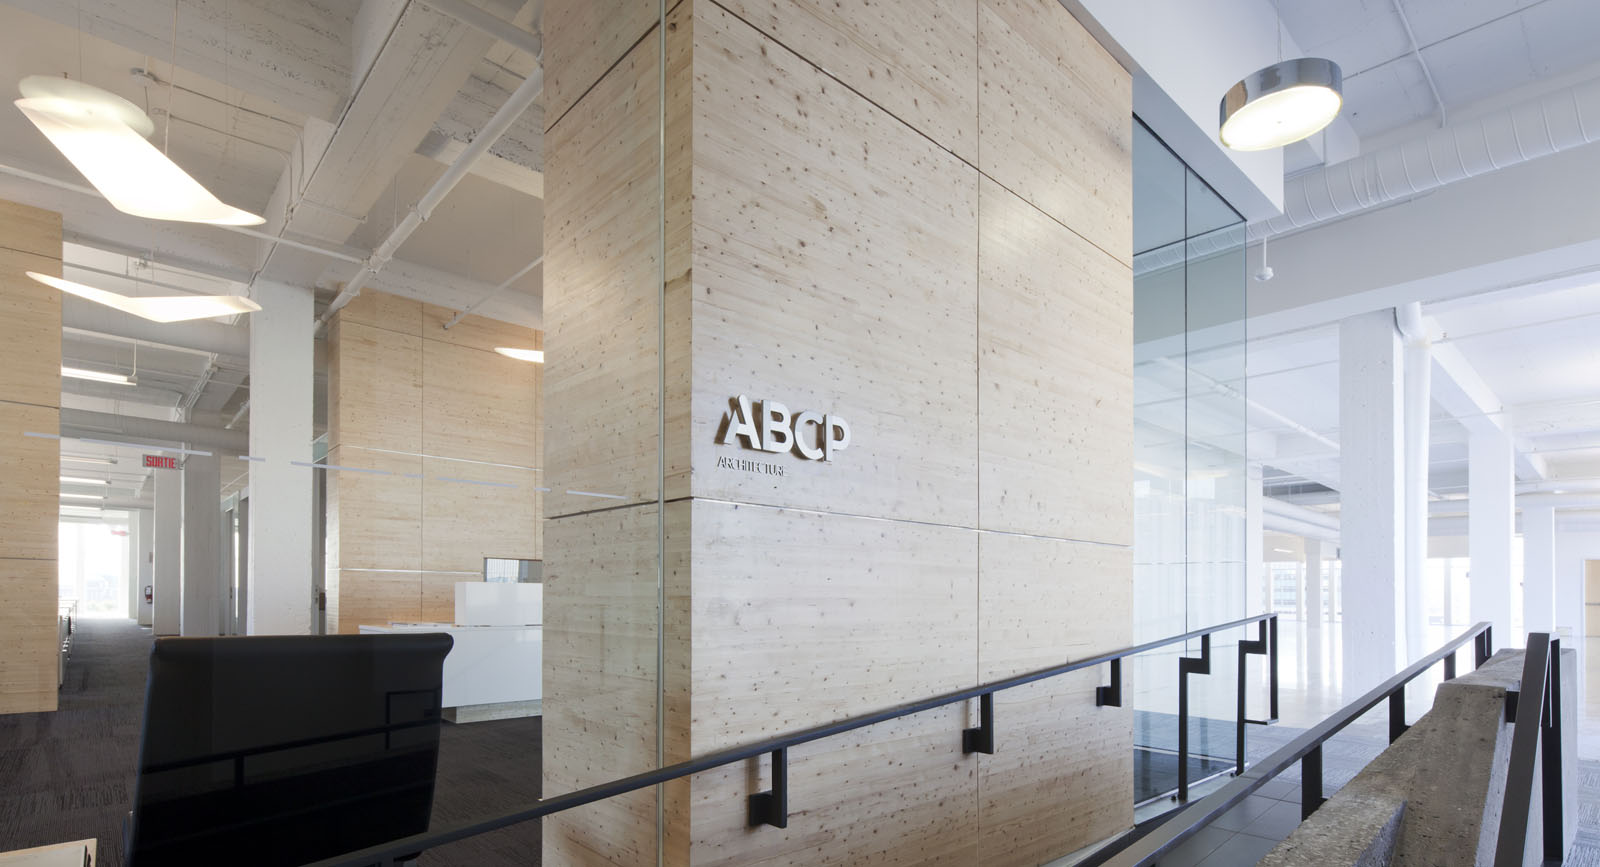 Bureaux ABCP Québec